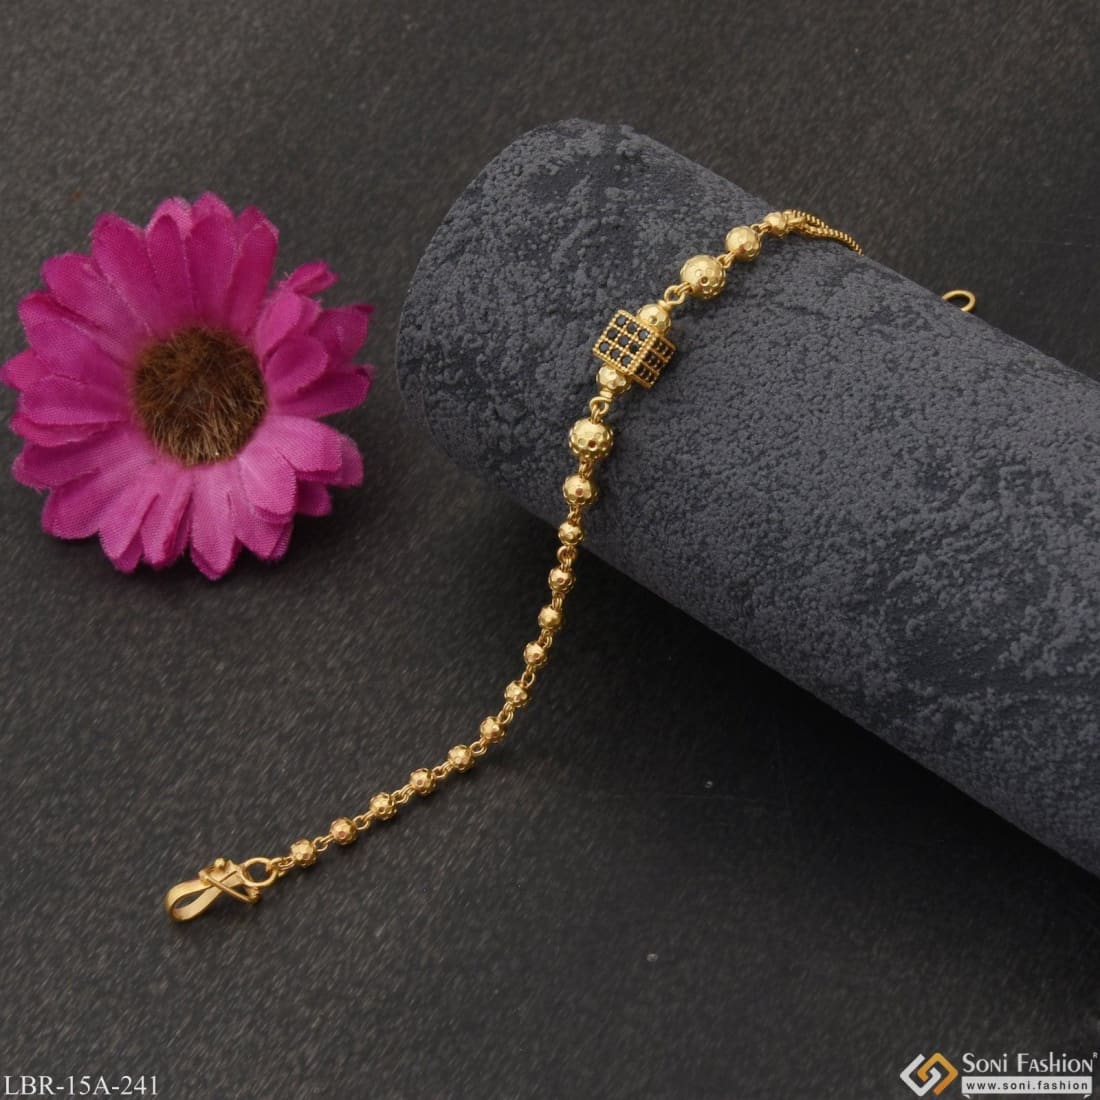 Sold at Auction: 8 kt gold bracelet with garnets